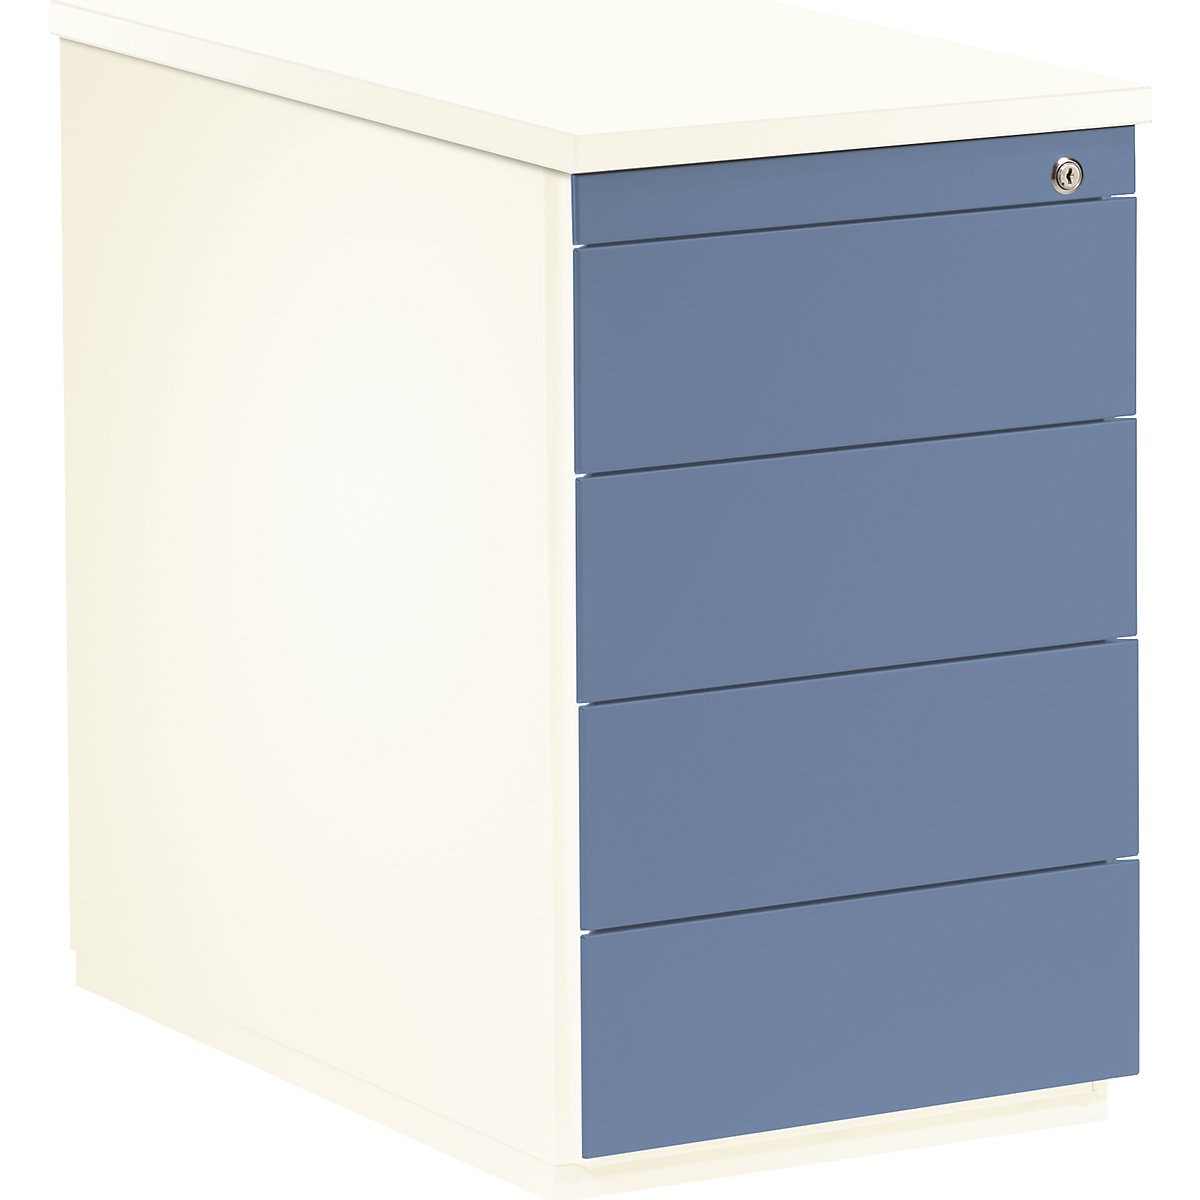 mauser – Casetieră cu sertare, î. x ad. 720 x 800 mm, 4 sertare, alb pur / albastru porumbel / alb pur